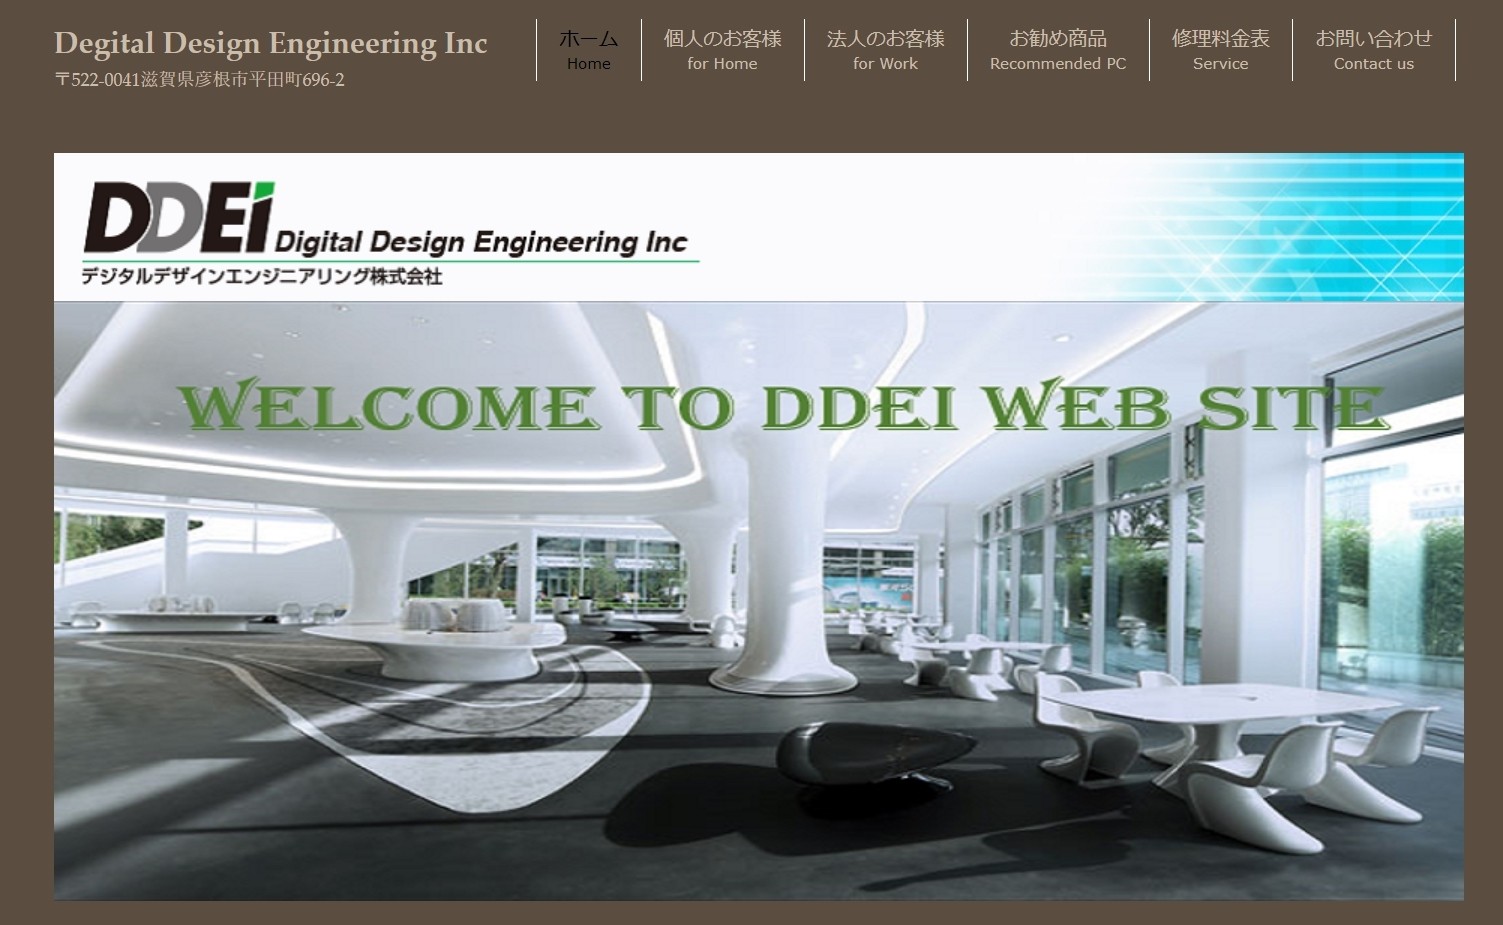 デジタルデザインエンジニアリング株式会社のデジタルデザインエンジニアリング株式会社サービス